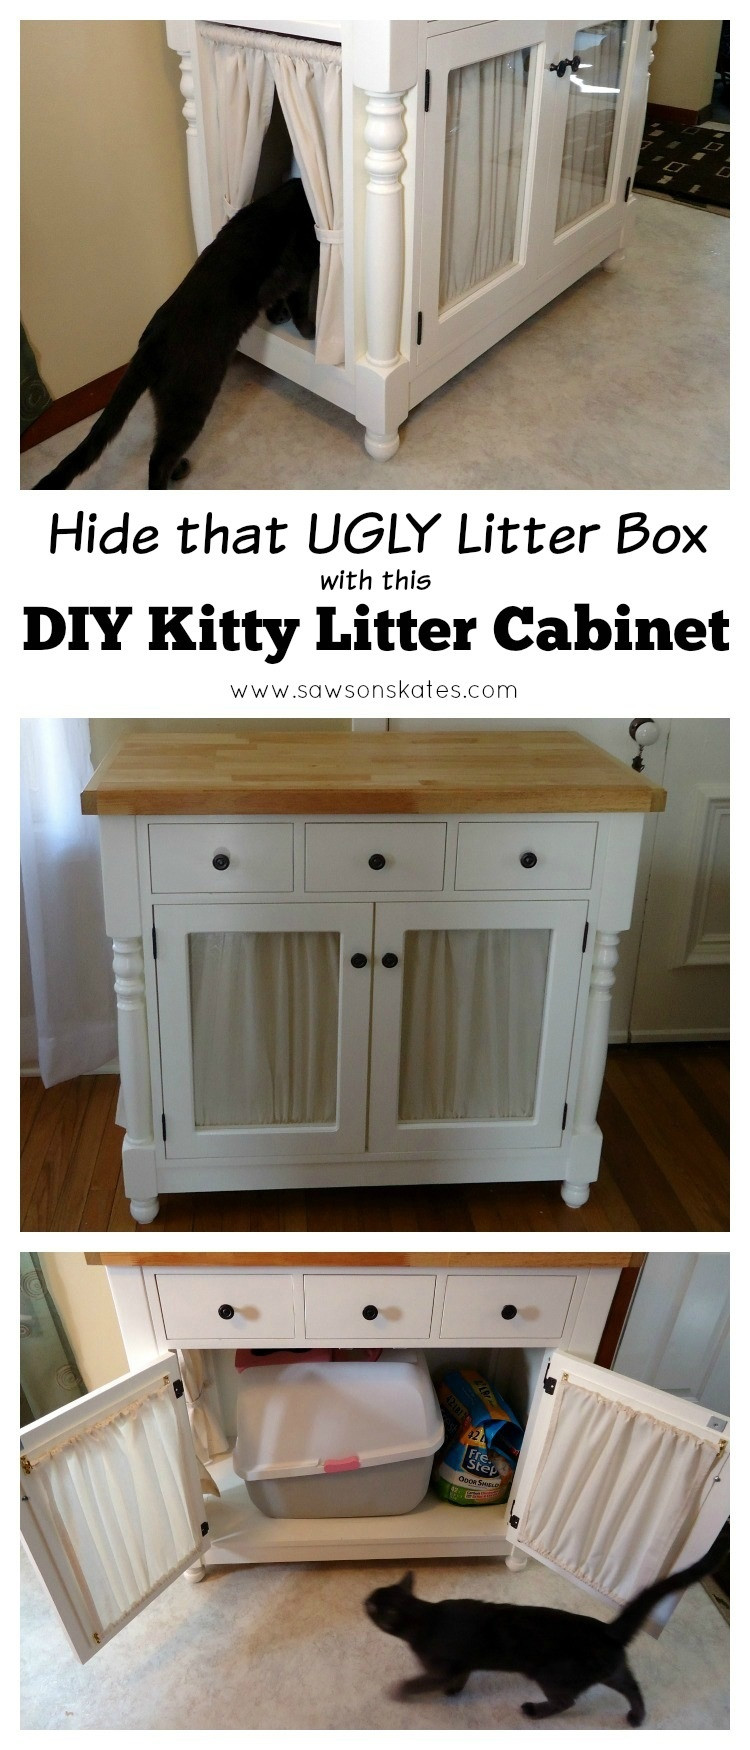 Hidden Cat Litter Box DIY
 DIY Kitty Litter Cabinet Hides UGLY Litter Box